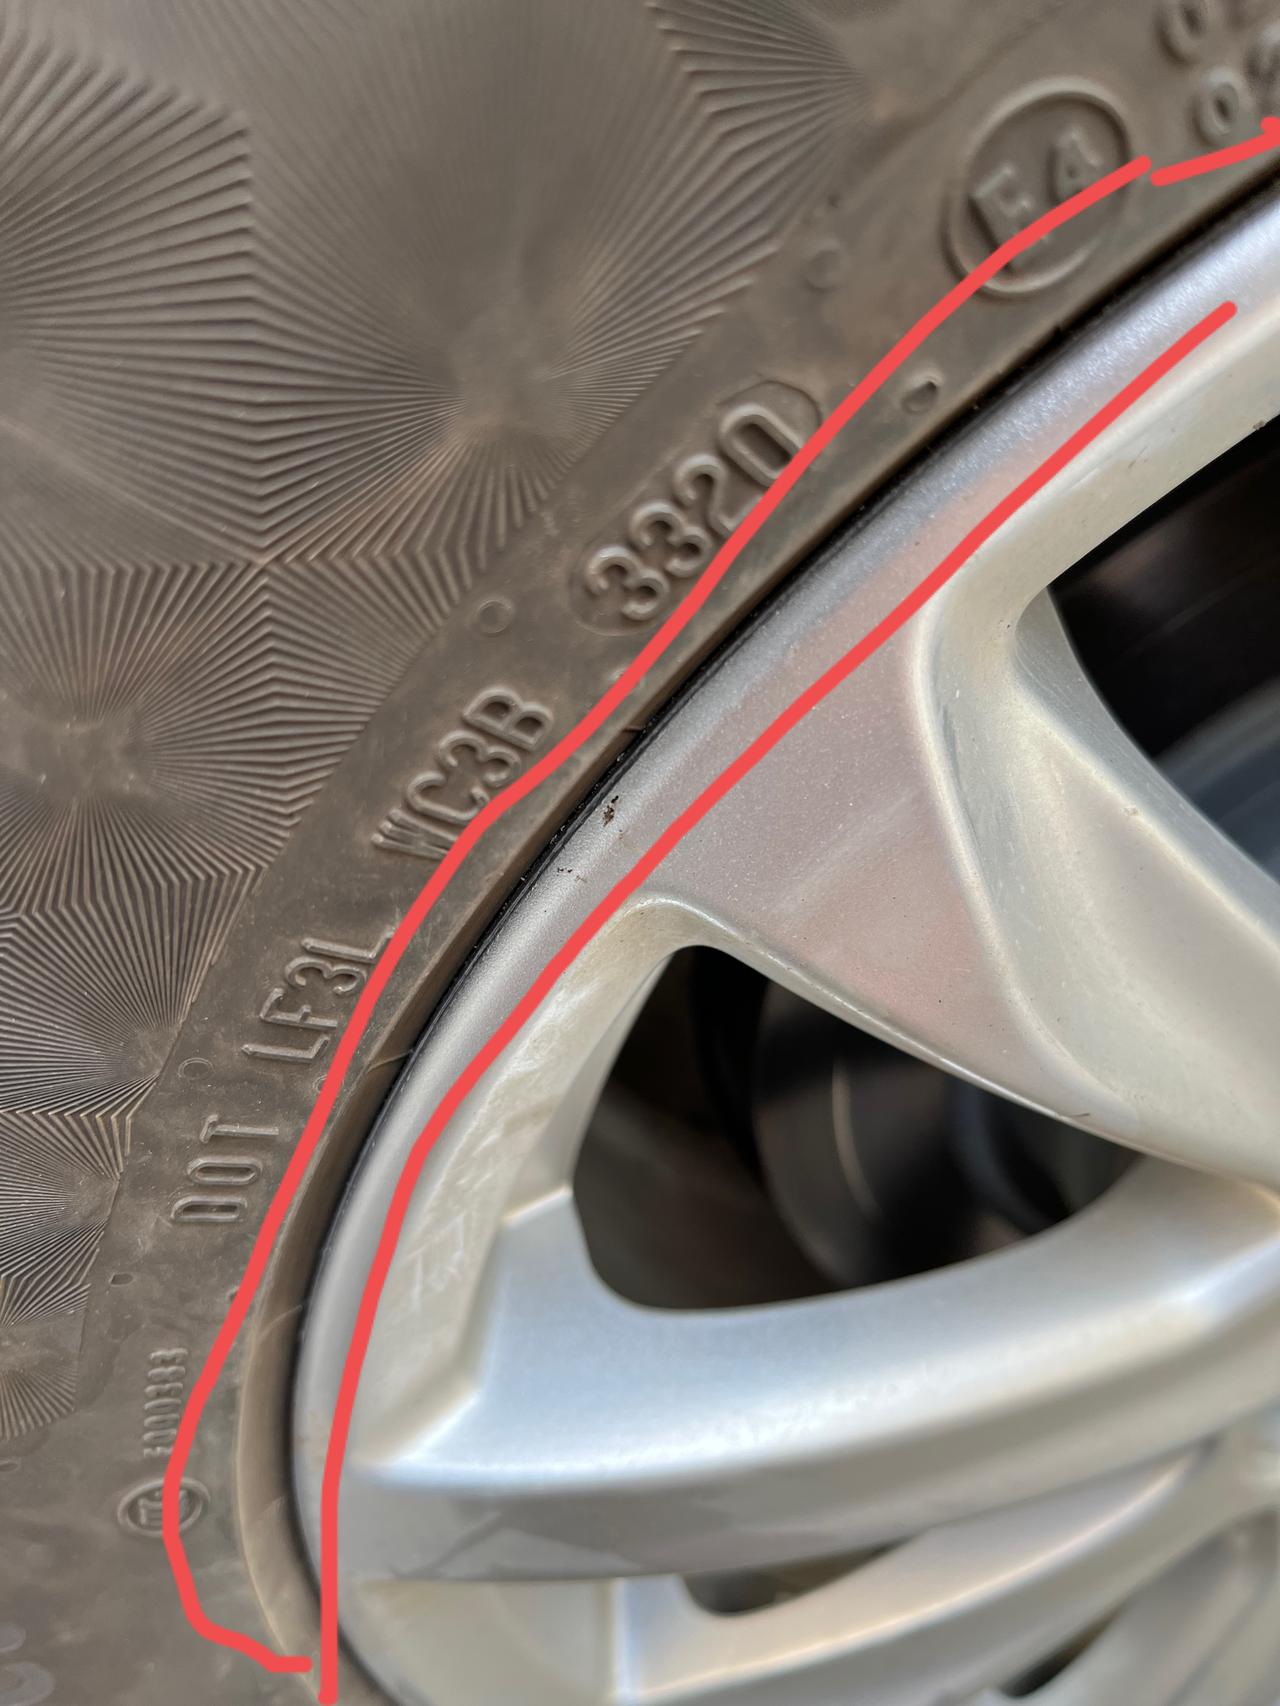 凯迪拉克XT4 补胎的时候把轮毂这里划伤了，要紧吗？